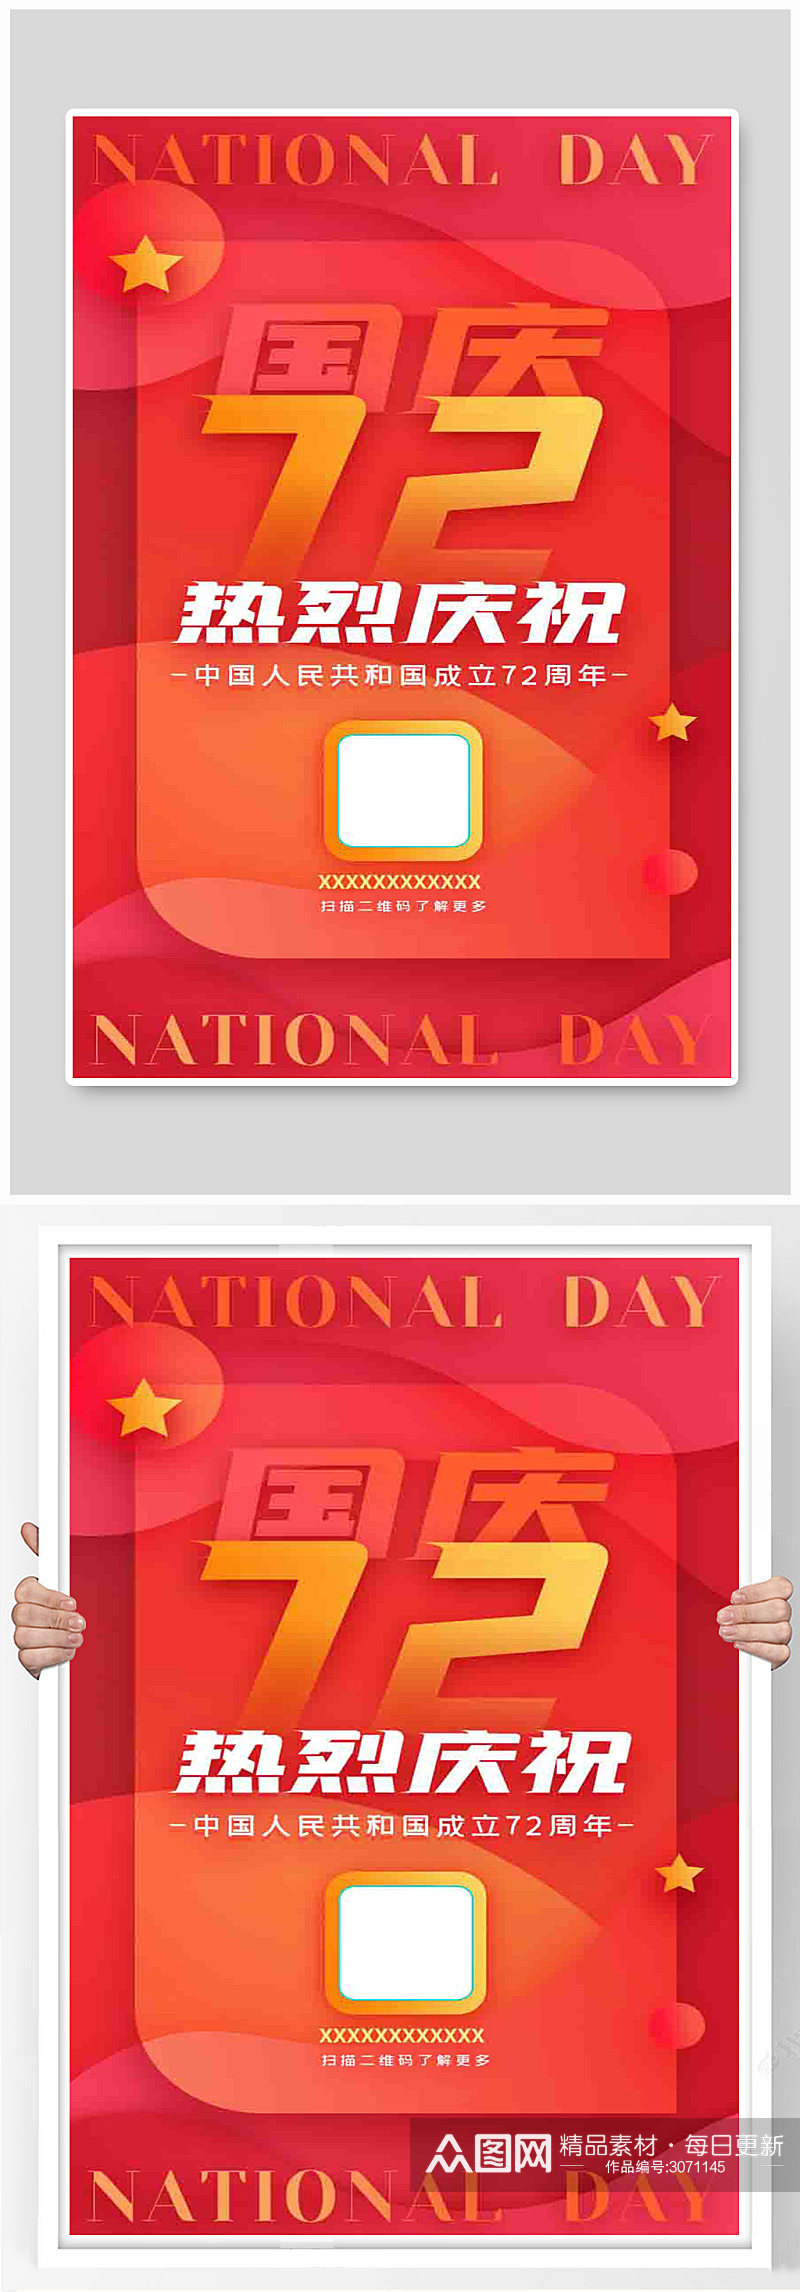 红色简约热烈庆祝国庆节72周年海报素材